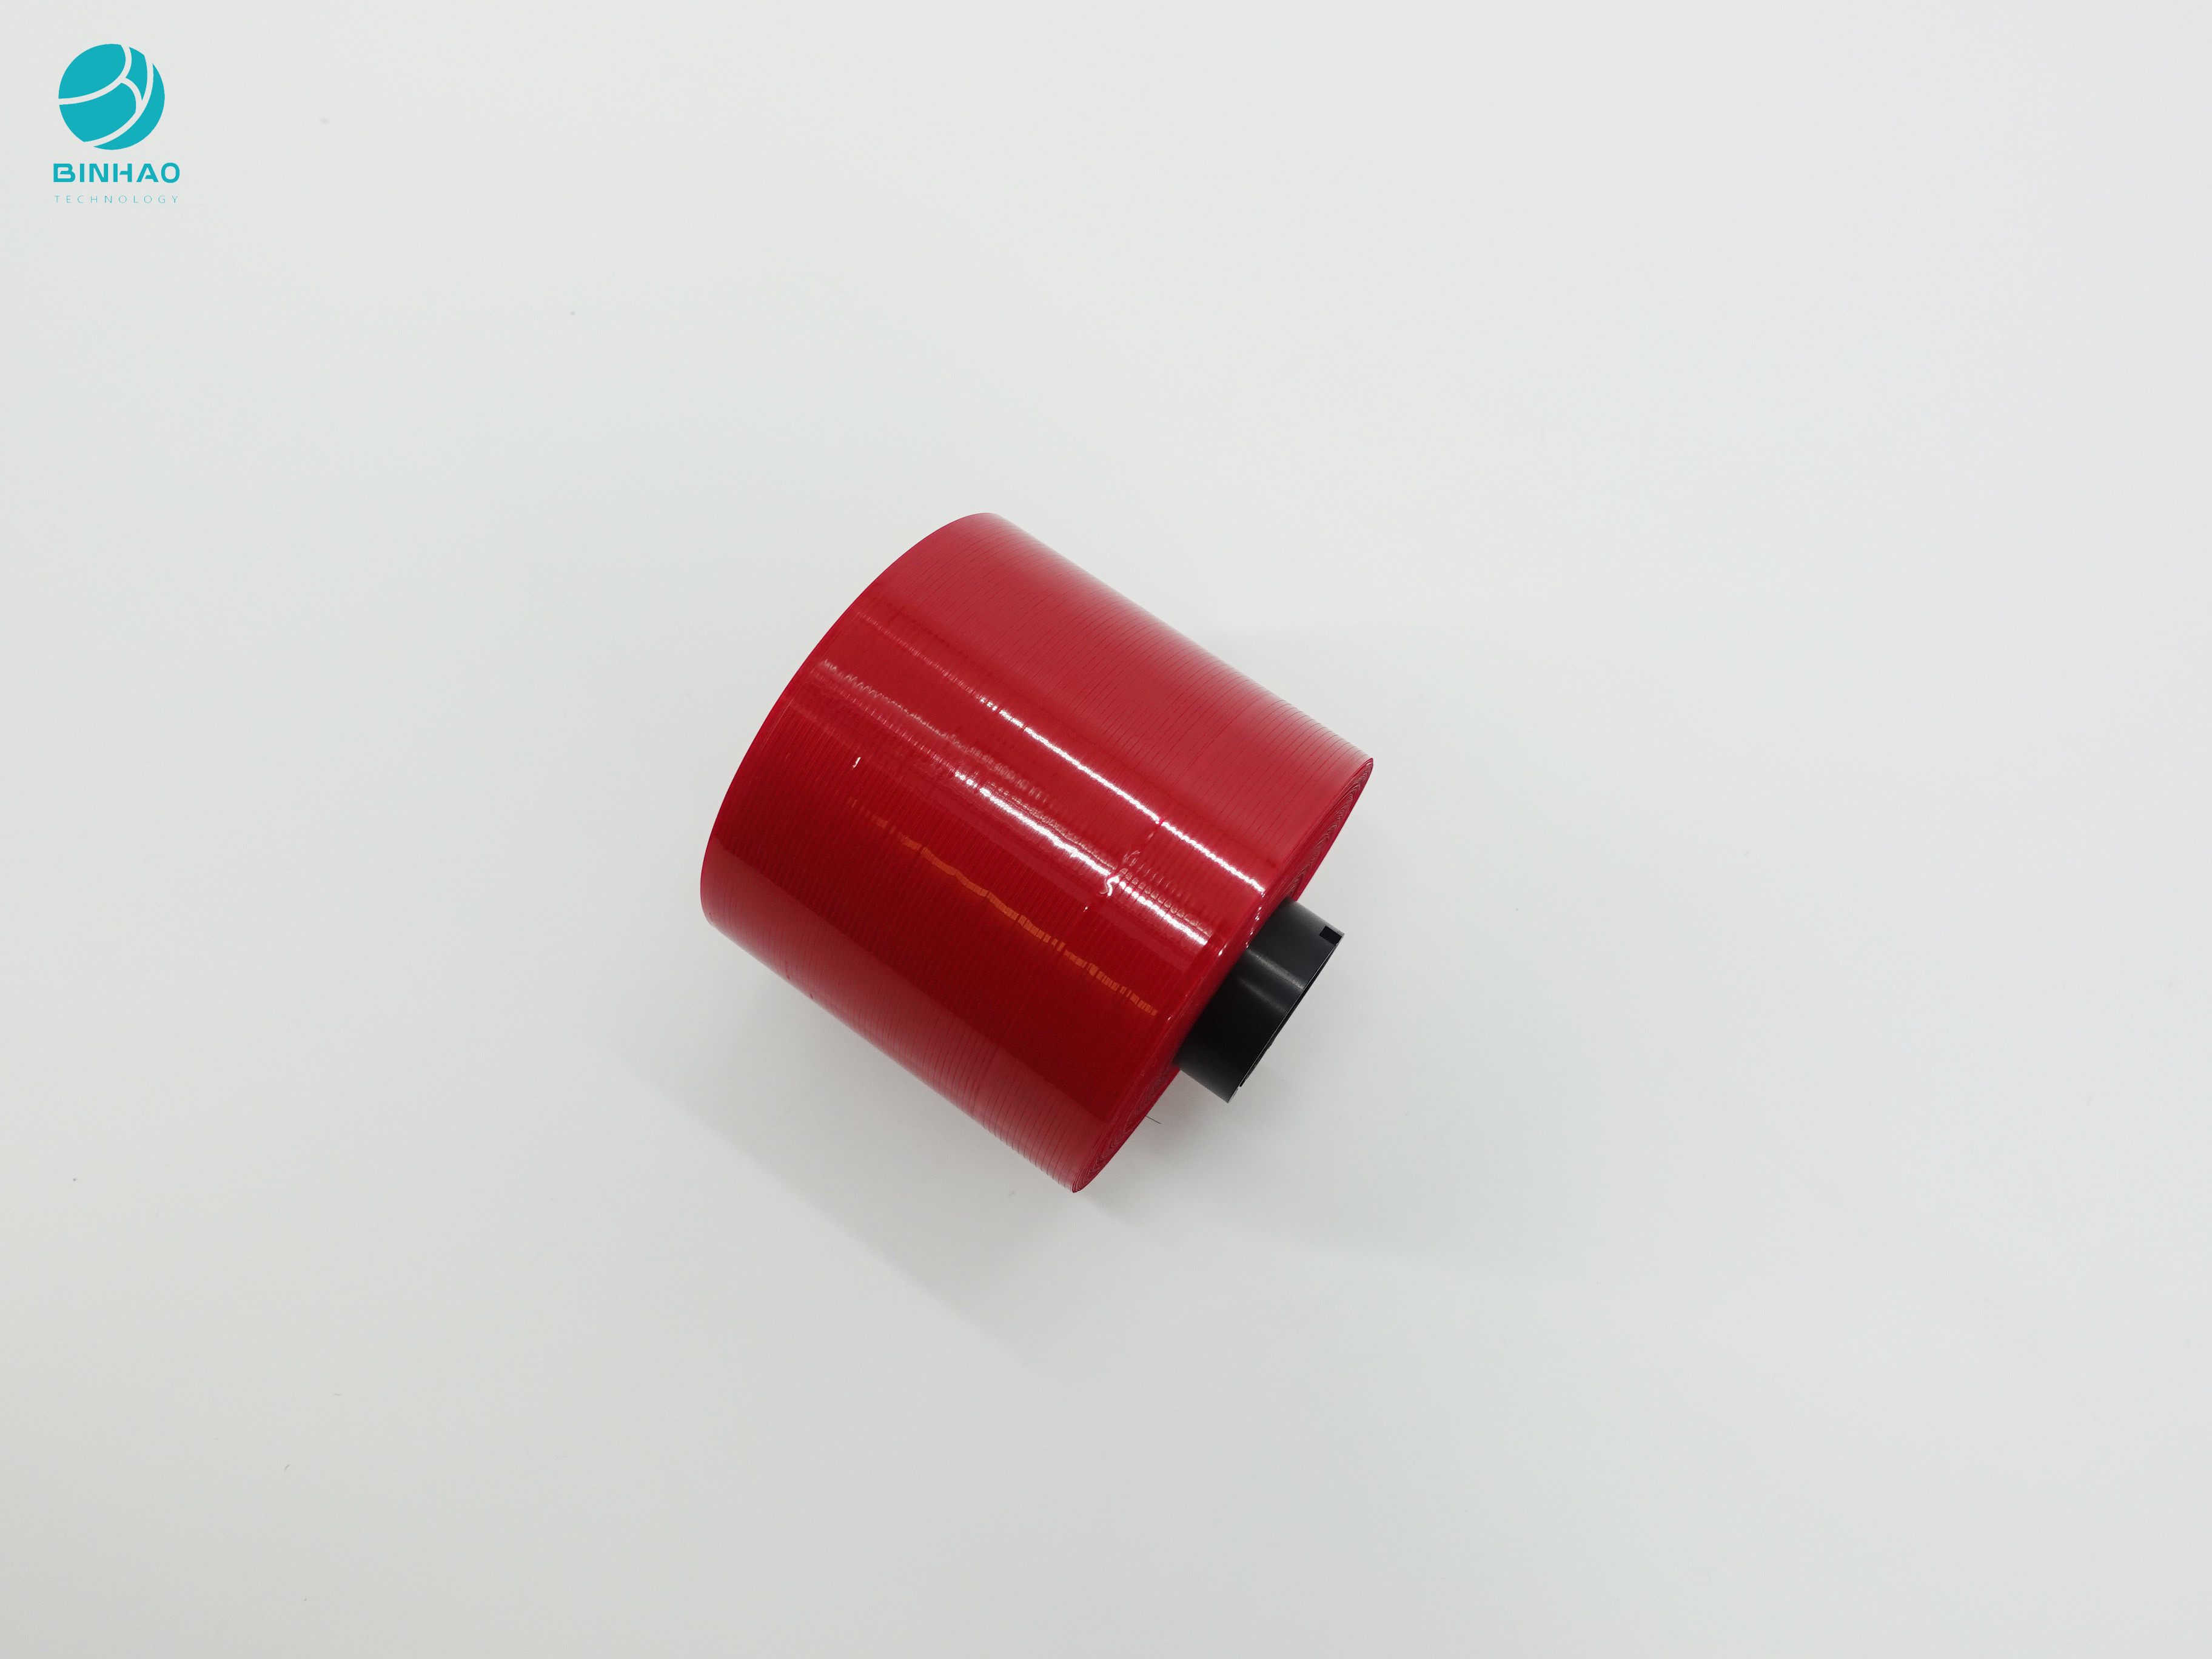 Thiết kế chống làm giả màu đỏ sẫm Băng keo 3mm để đóng gói hộp thuốc lá